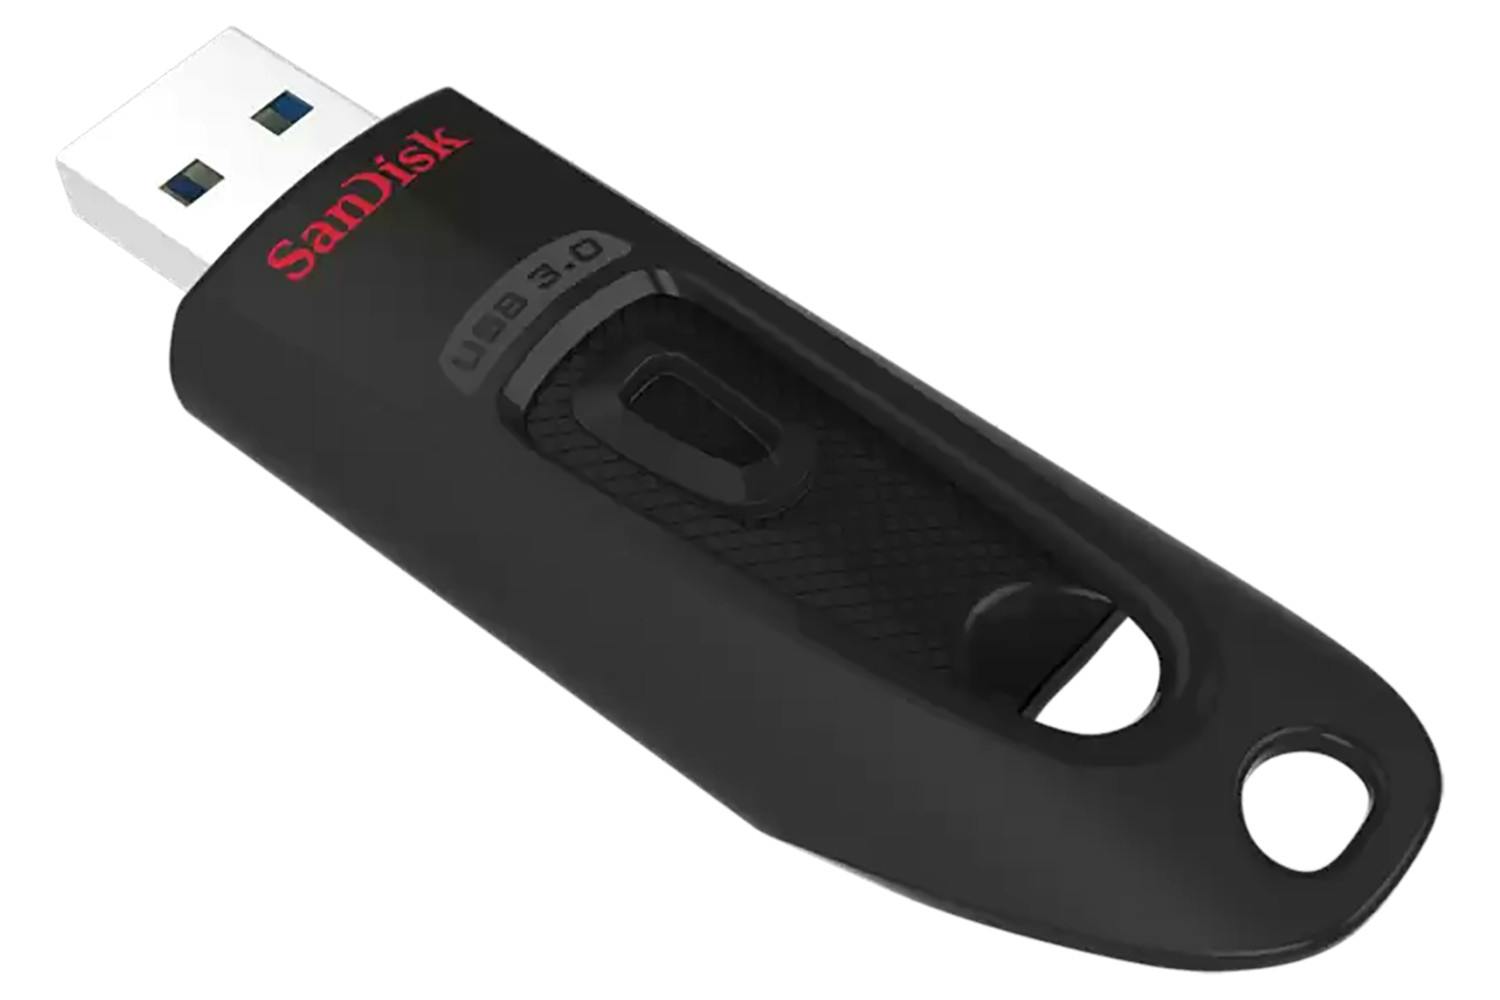 SanDisk Ultra USB 3.0 Flash Drive | 512GB